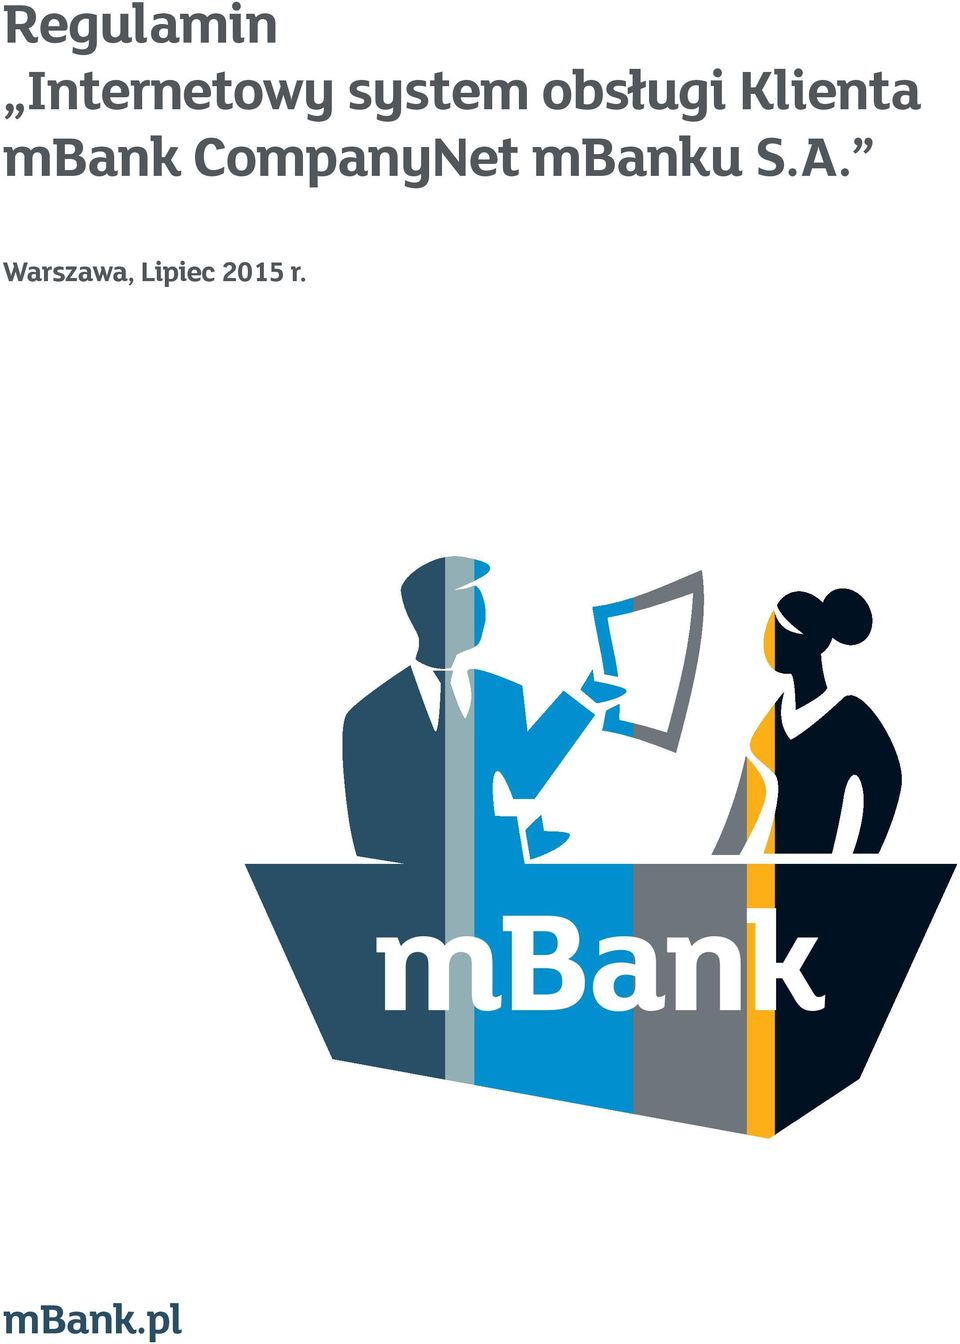 mbank CompanyNet mbanku S.